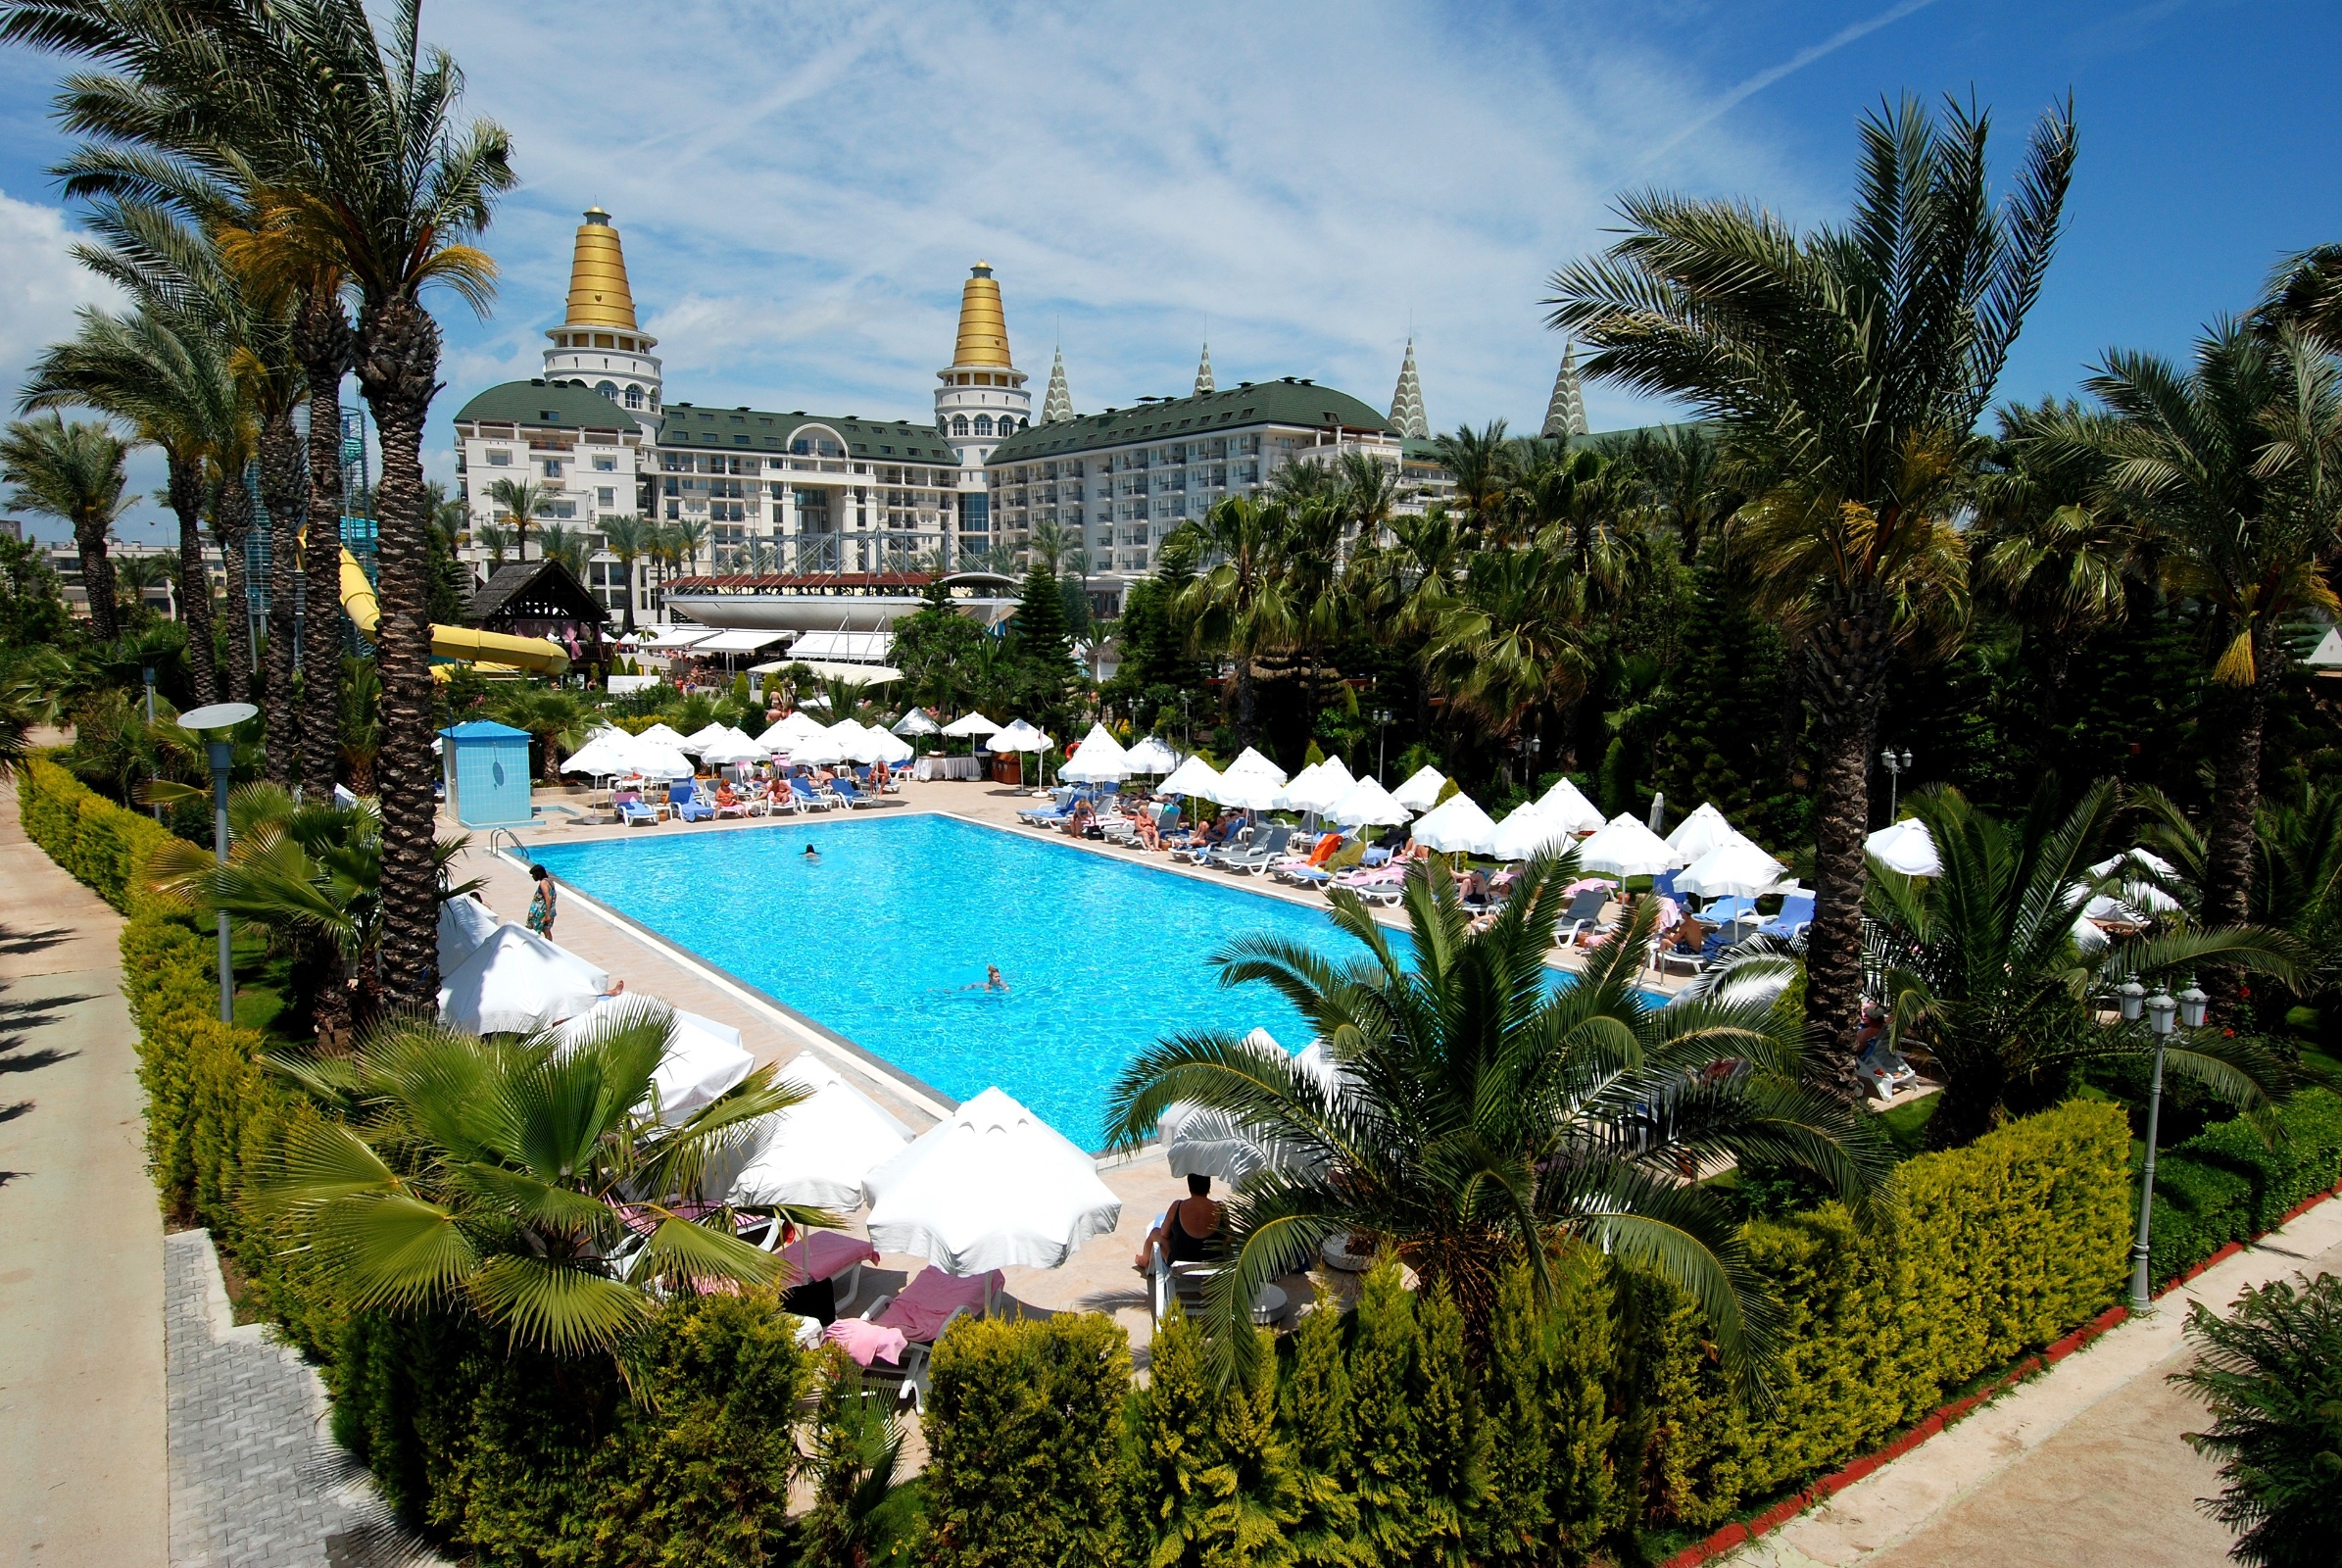 Garten Whirlpool Best Of Delphin Diva Hotel Premiere 5 Hrs Star Hotel In Antalya